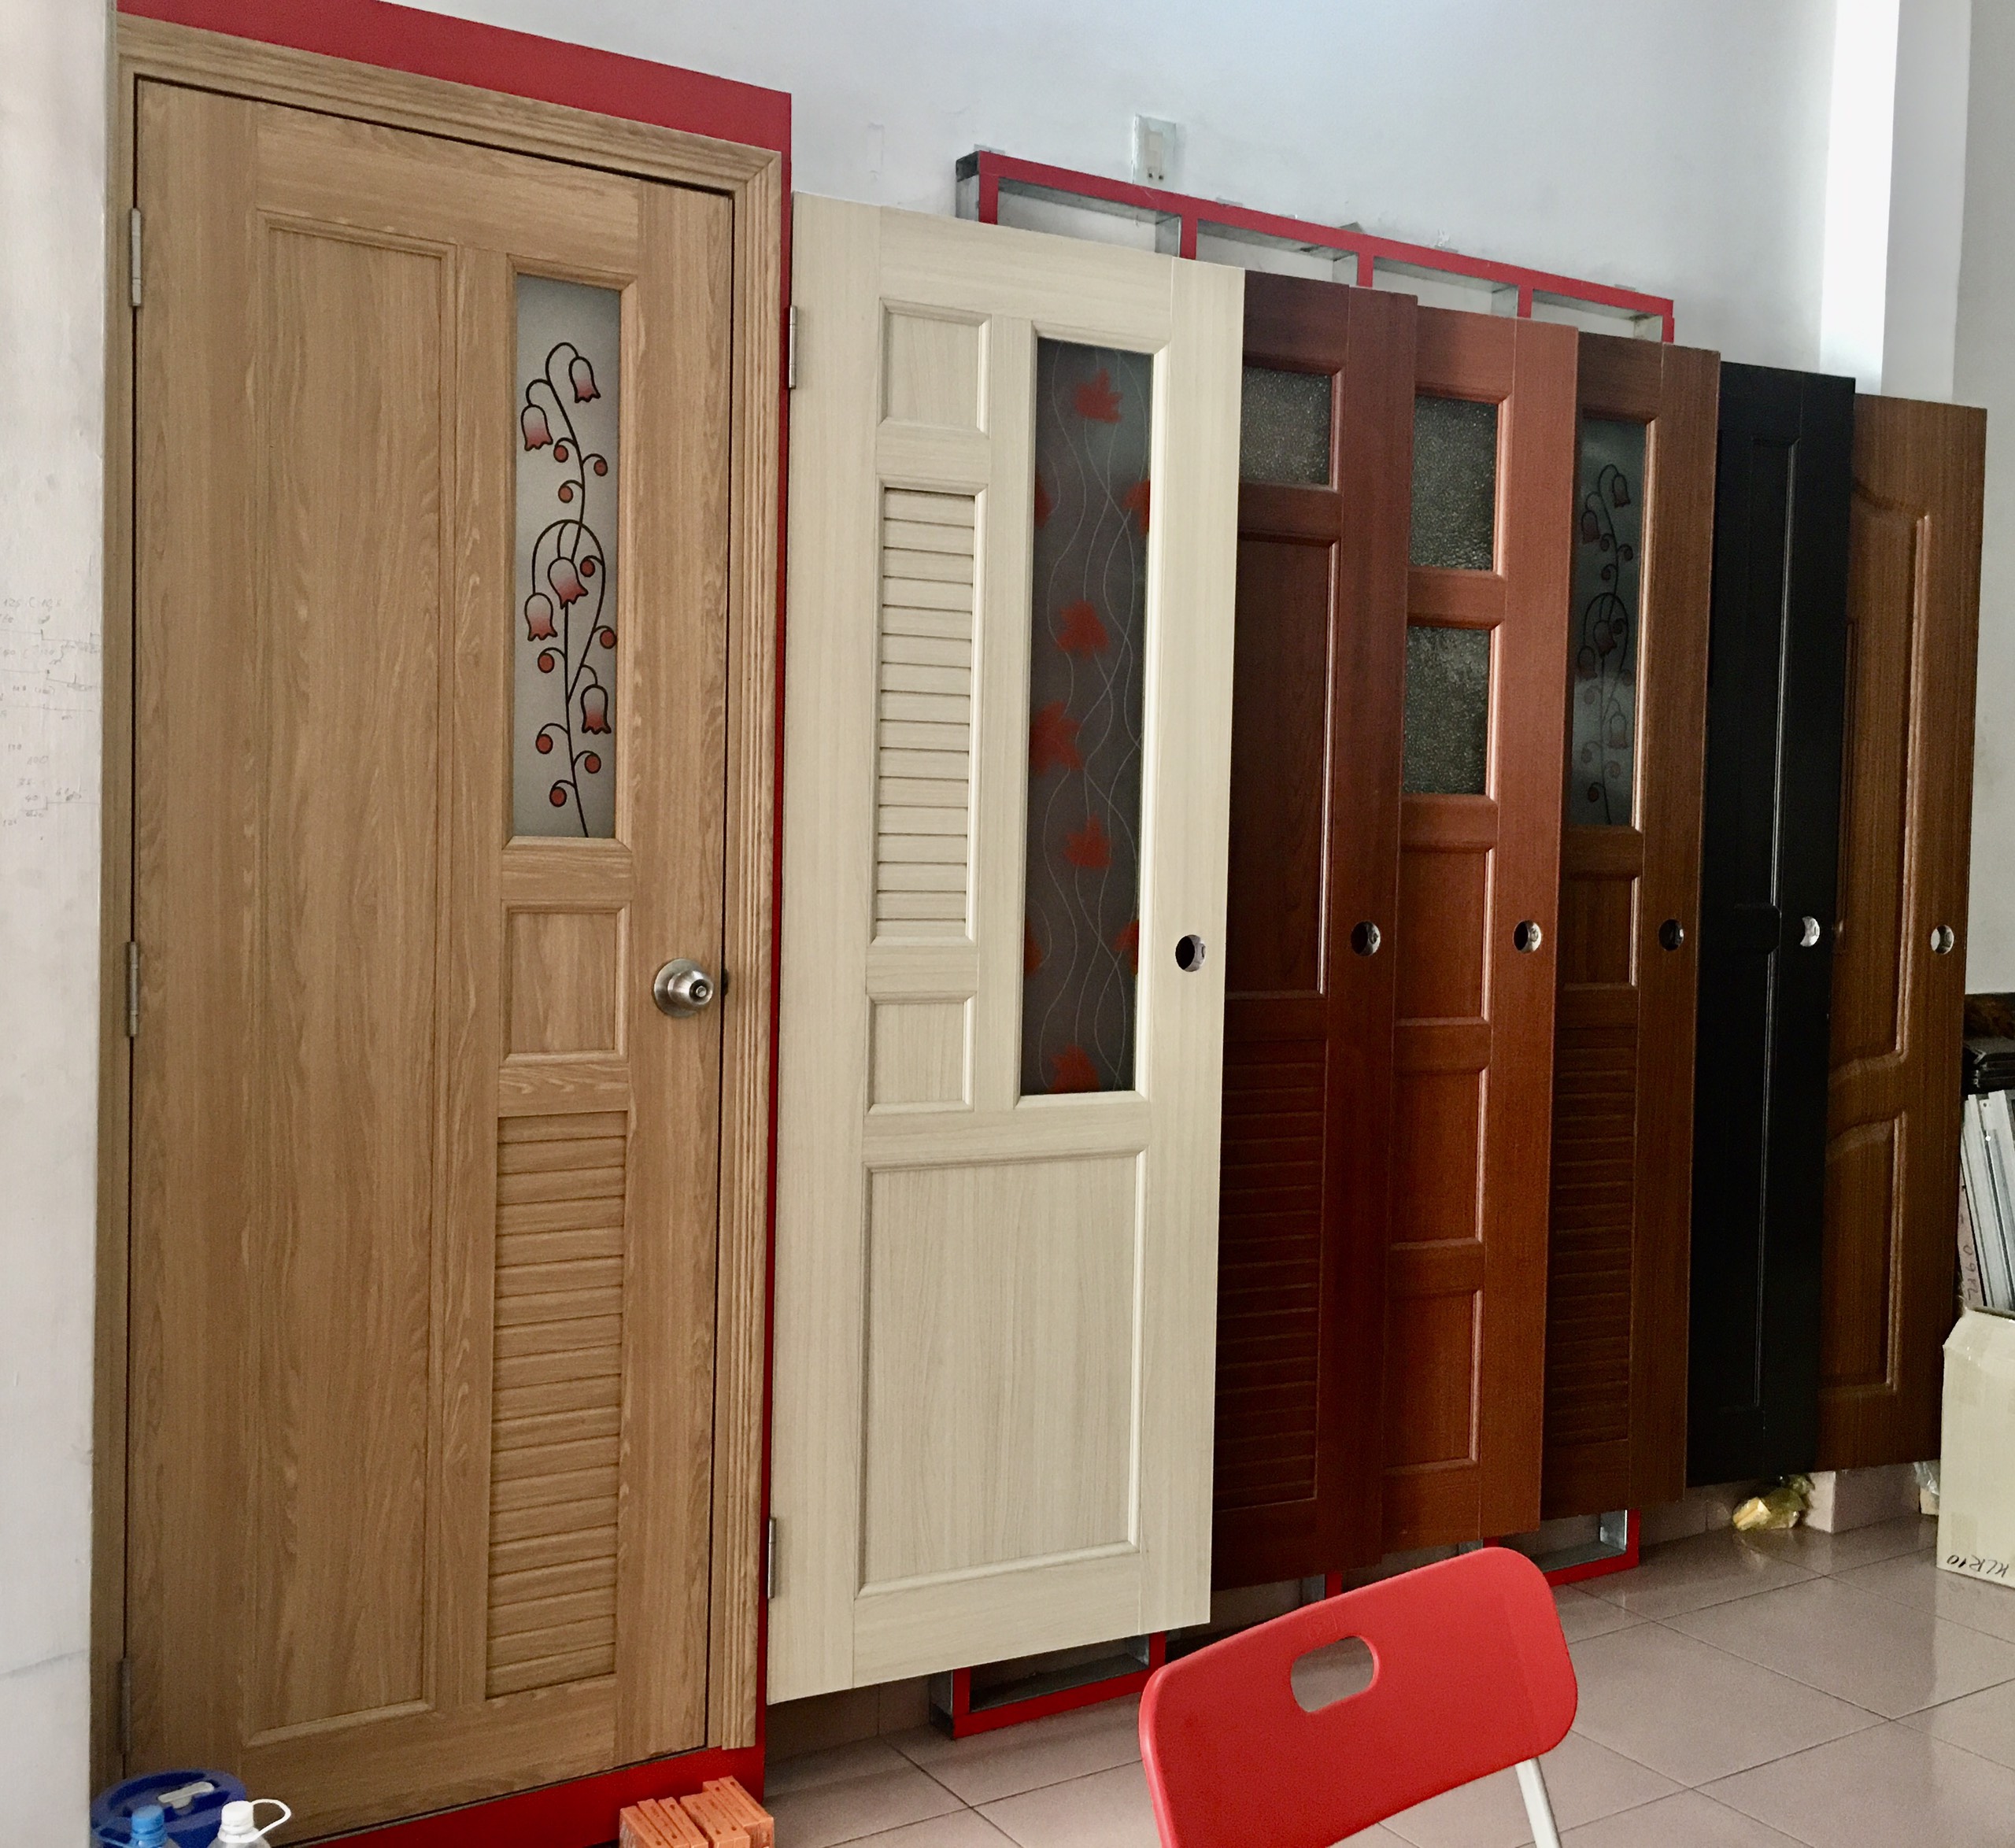 Mẫu cửa nhựa Đài Loan phủ da giả gỗ chuyên dùng cho cửa nhà vệ sinh -tư vấn chọn loại cửa phù hợp..